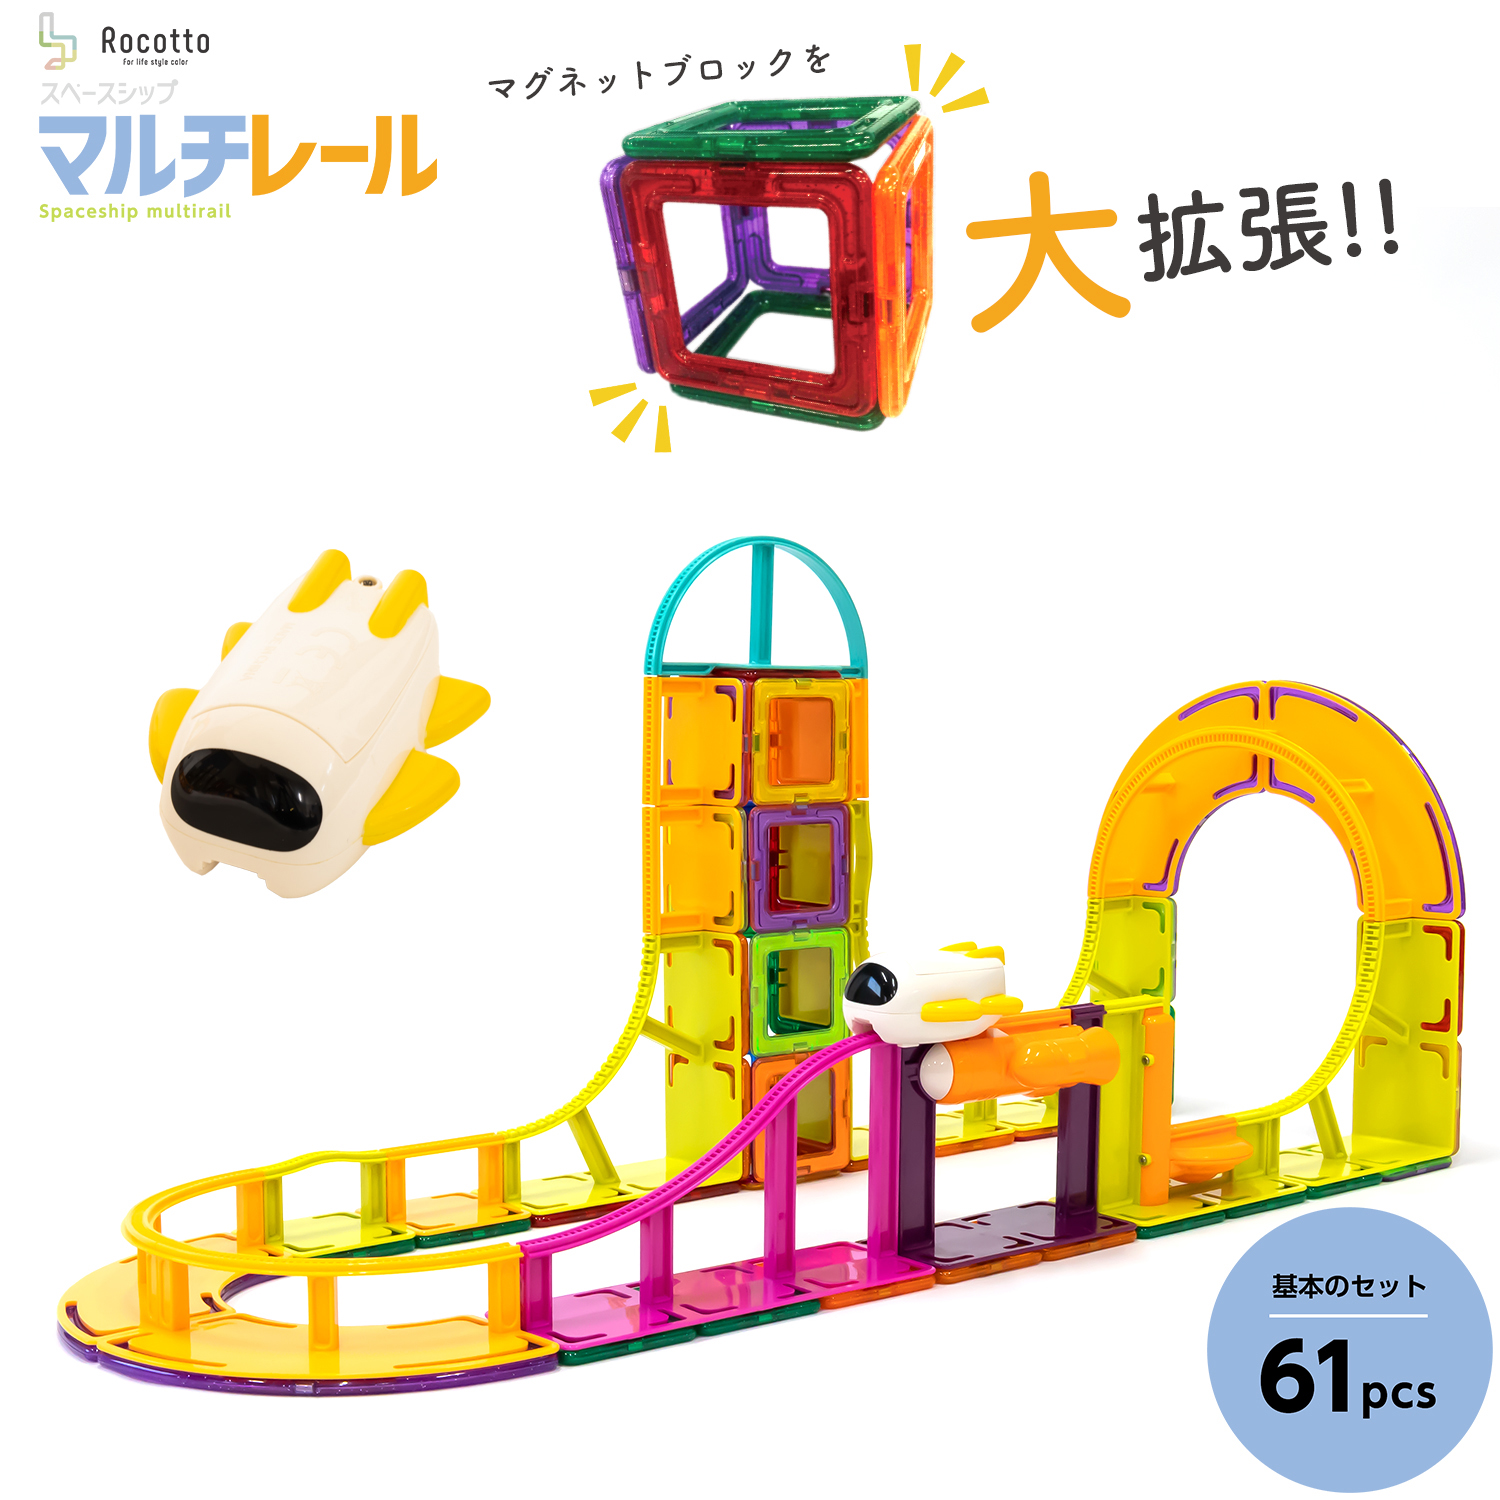 [在庫処分] 磁石 おもちゃ ブロック マグフォーマー 互換品 61ピース マグネットブロック 知育ブロック 玩具 積み木 スペースシップ マルチレール